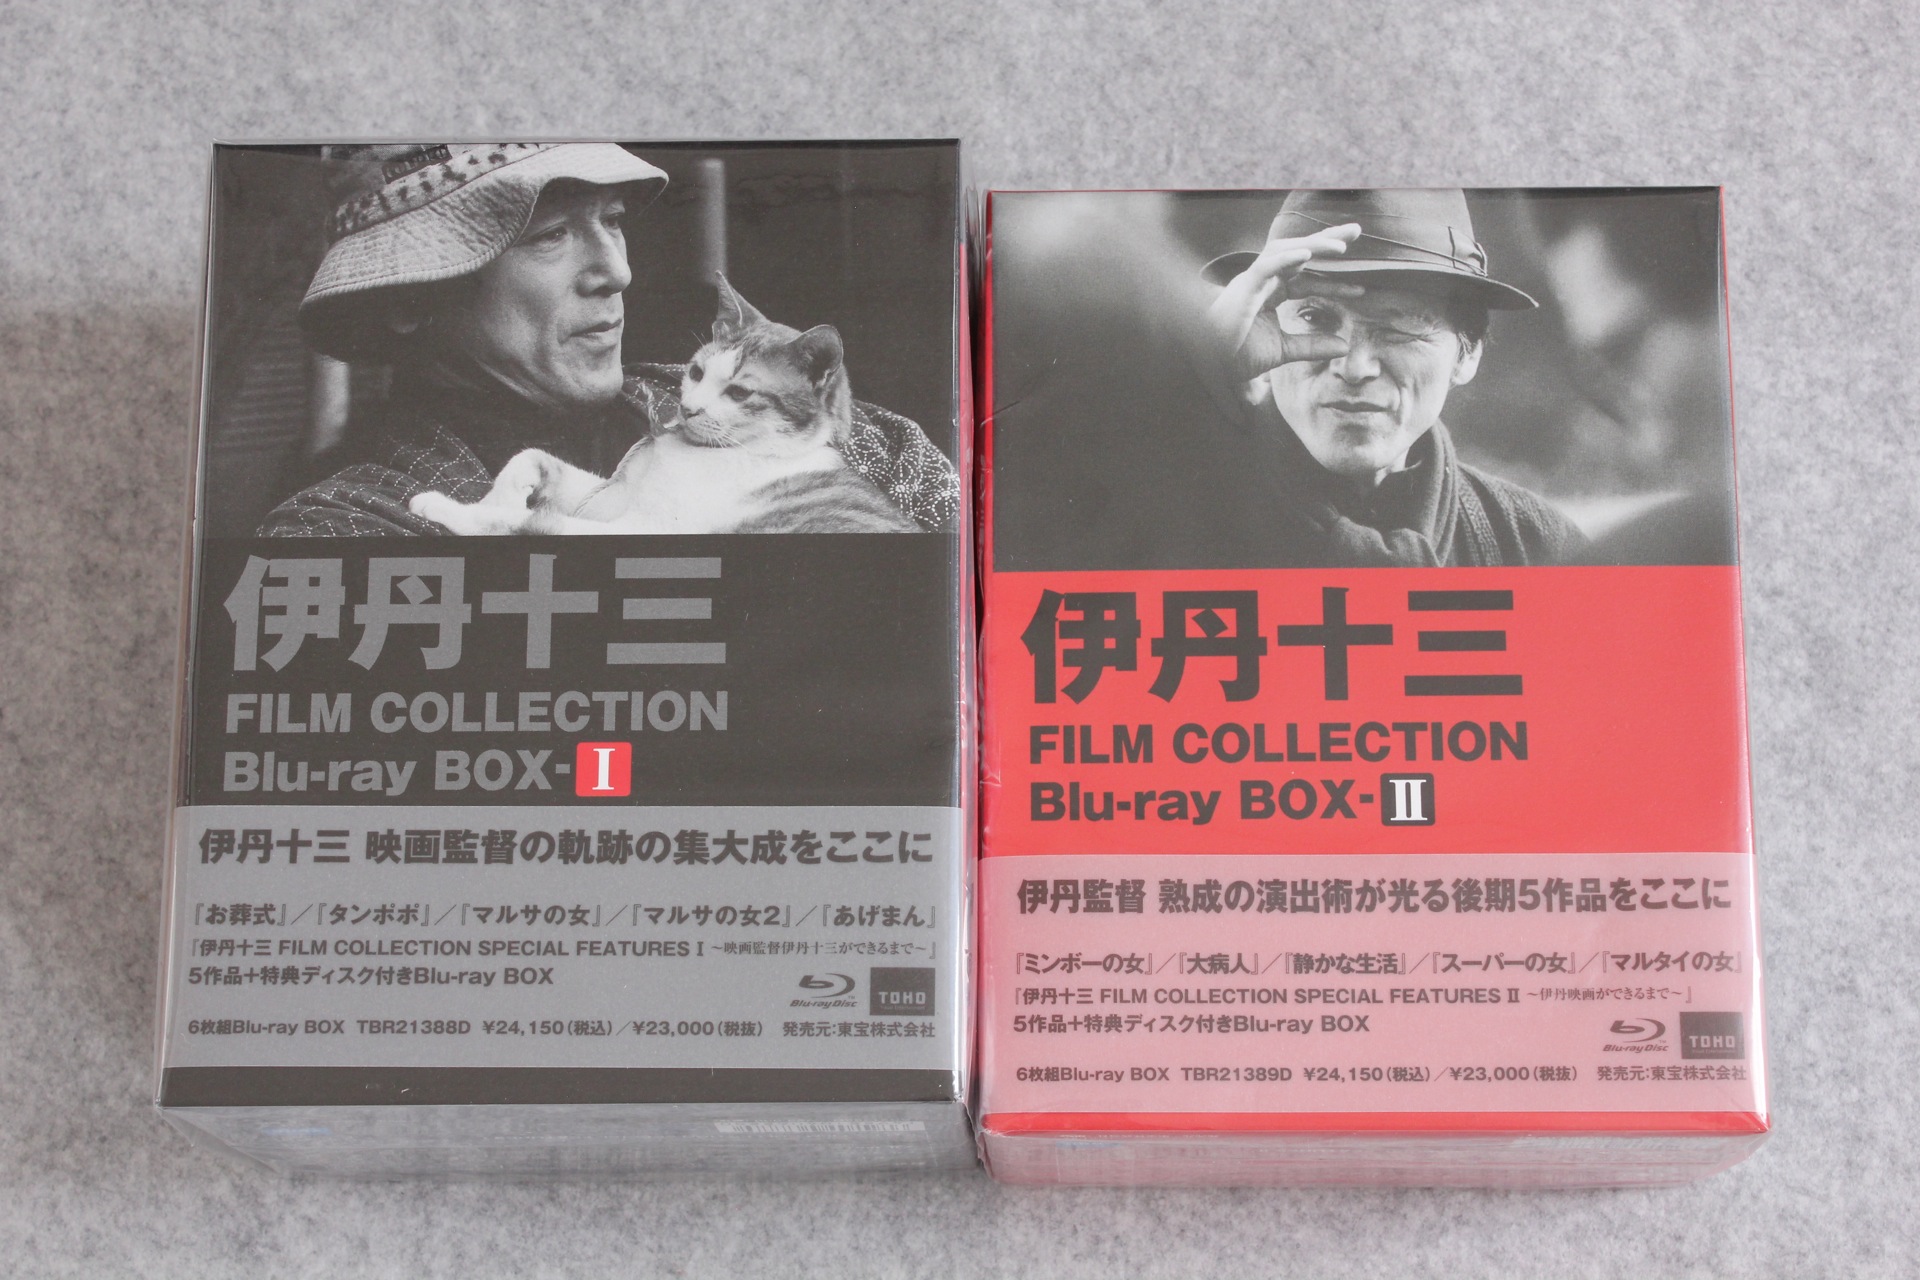 ブルーレイ「伊丹十三 FILM COLLECTION Blu-ray BOX I」「～II」が届い